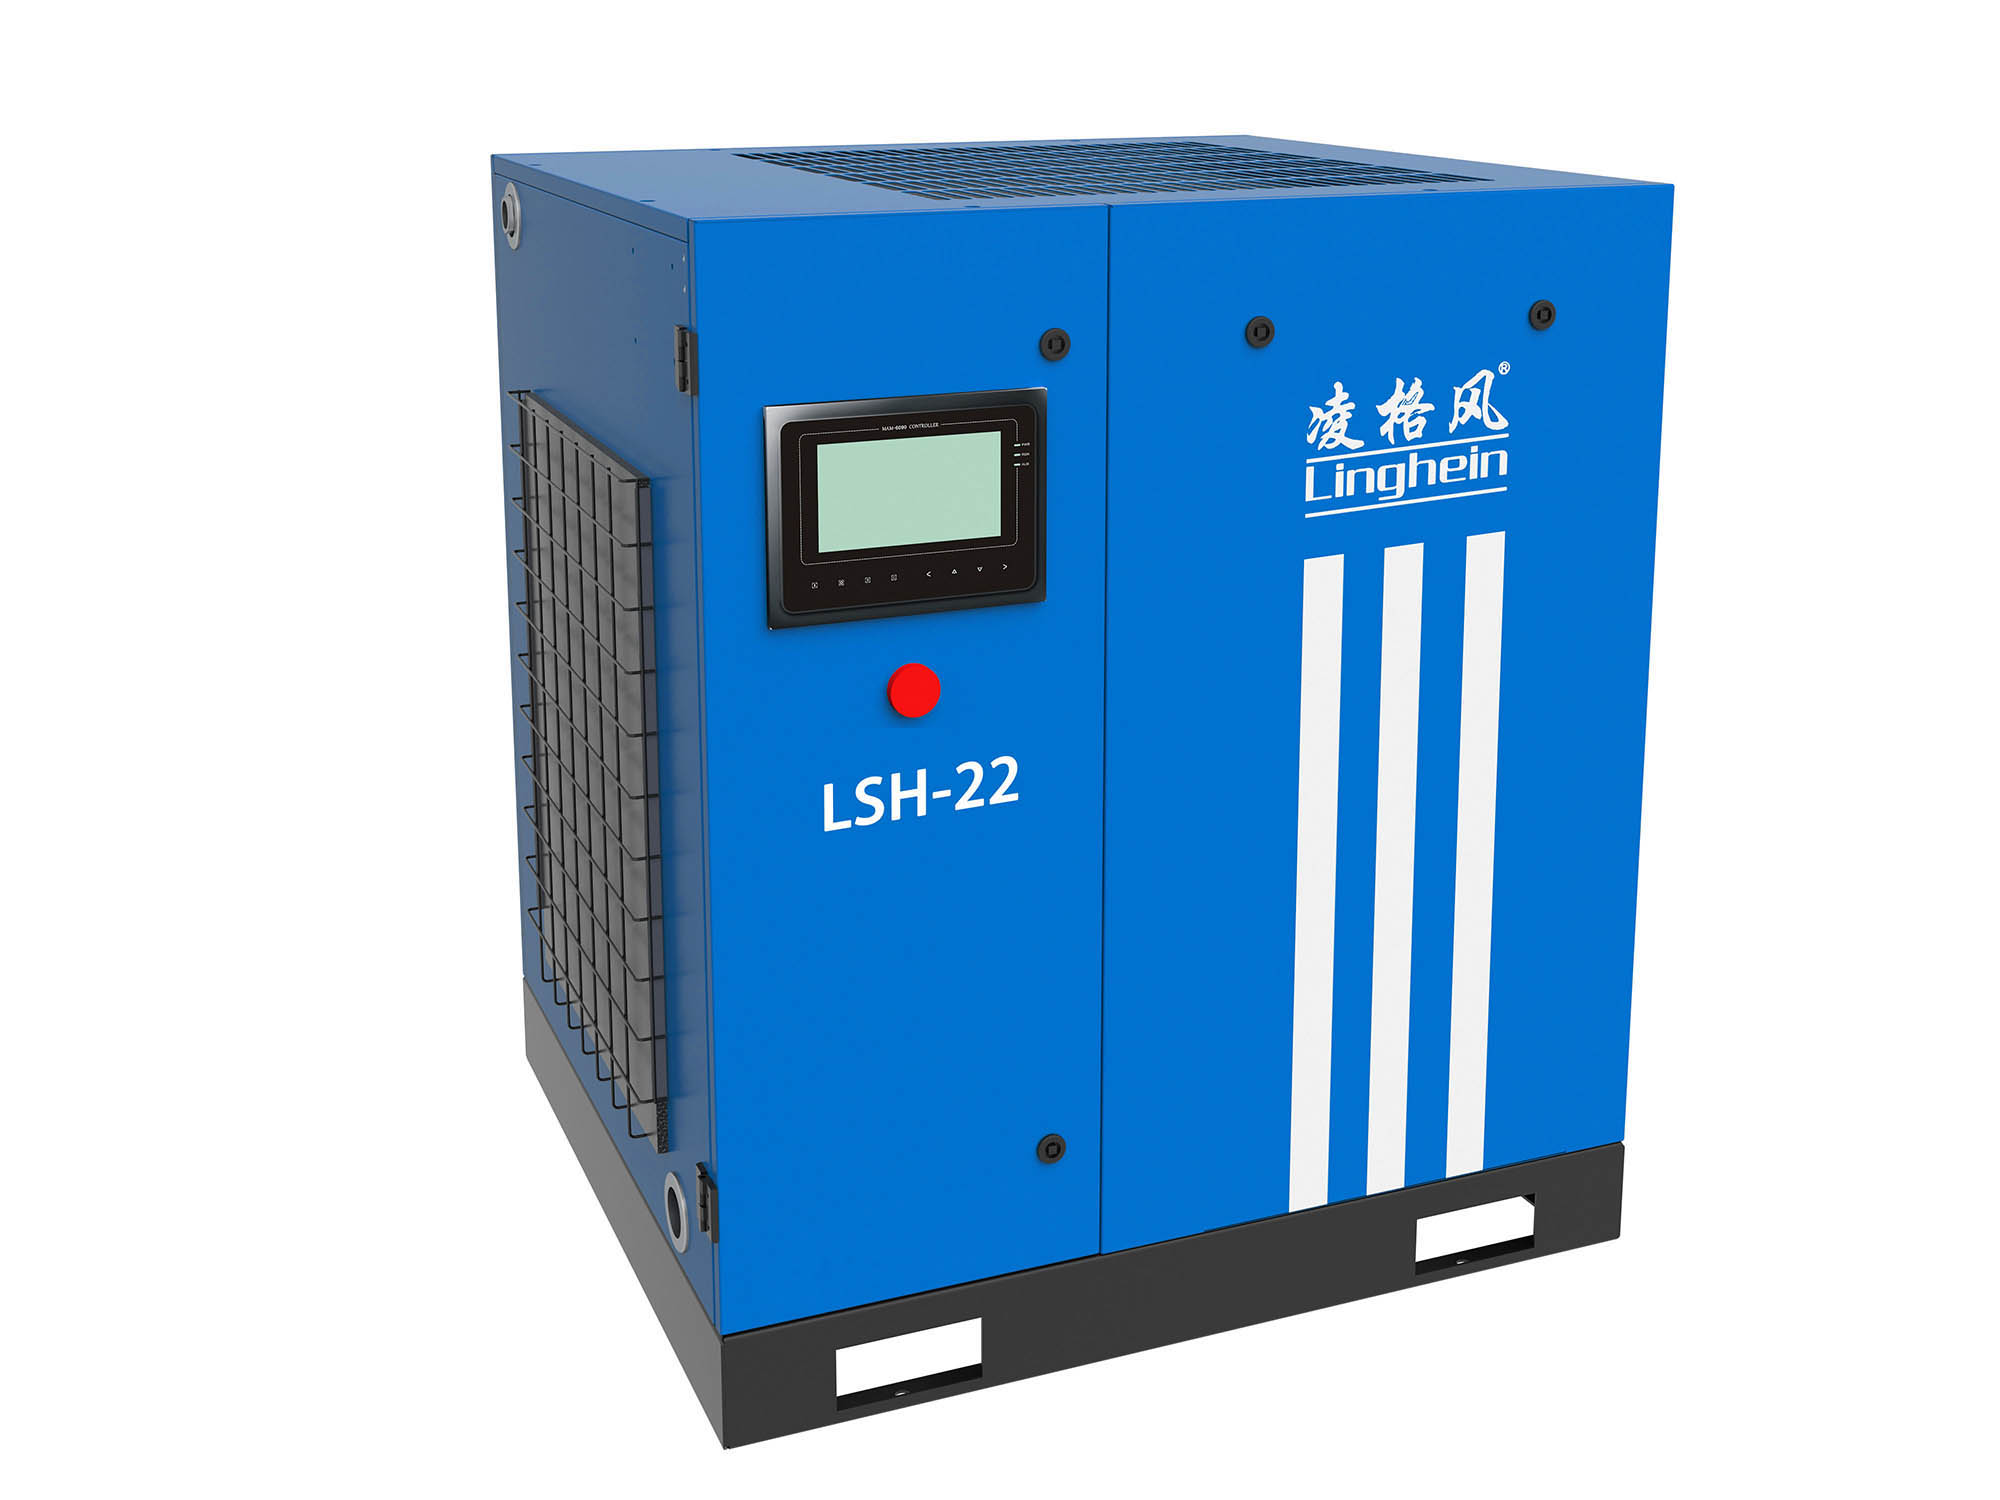 吉林油冷永磁空压机****在线为您服务 创造** 上海凌格风气体技术供应